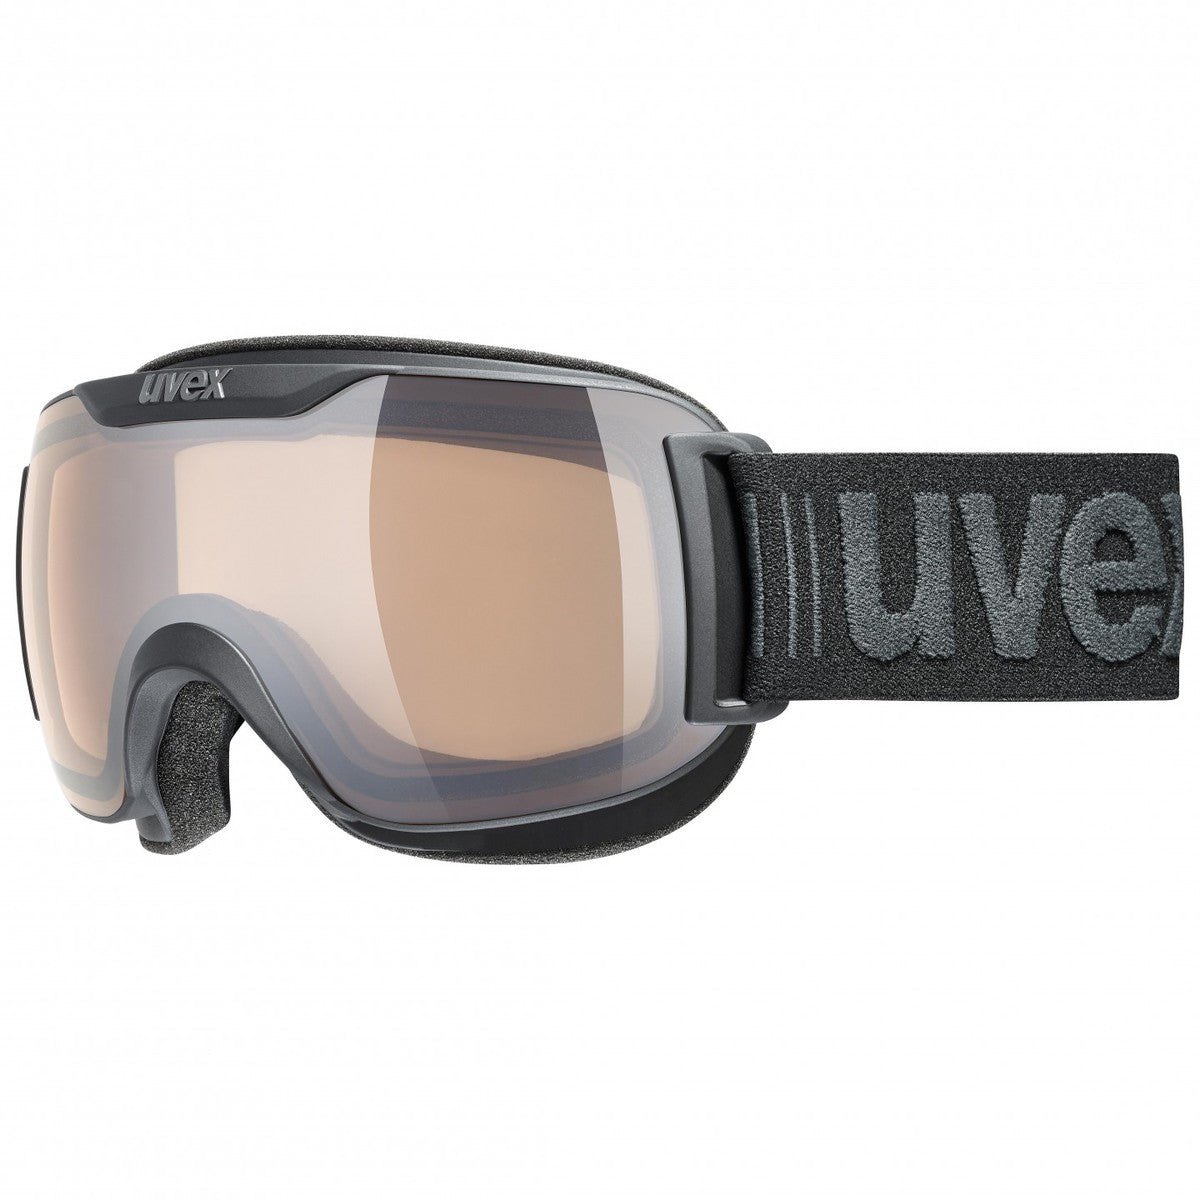 Uvex Downhill 2000 S V skibril meekleurend zwart